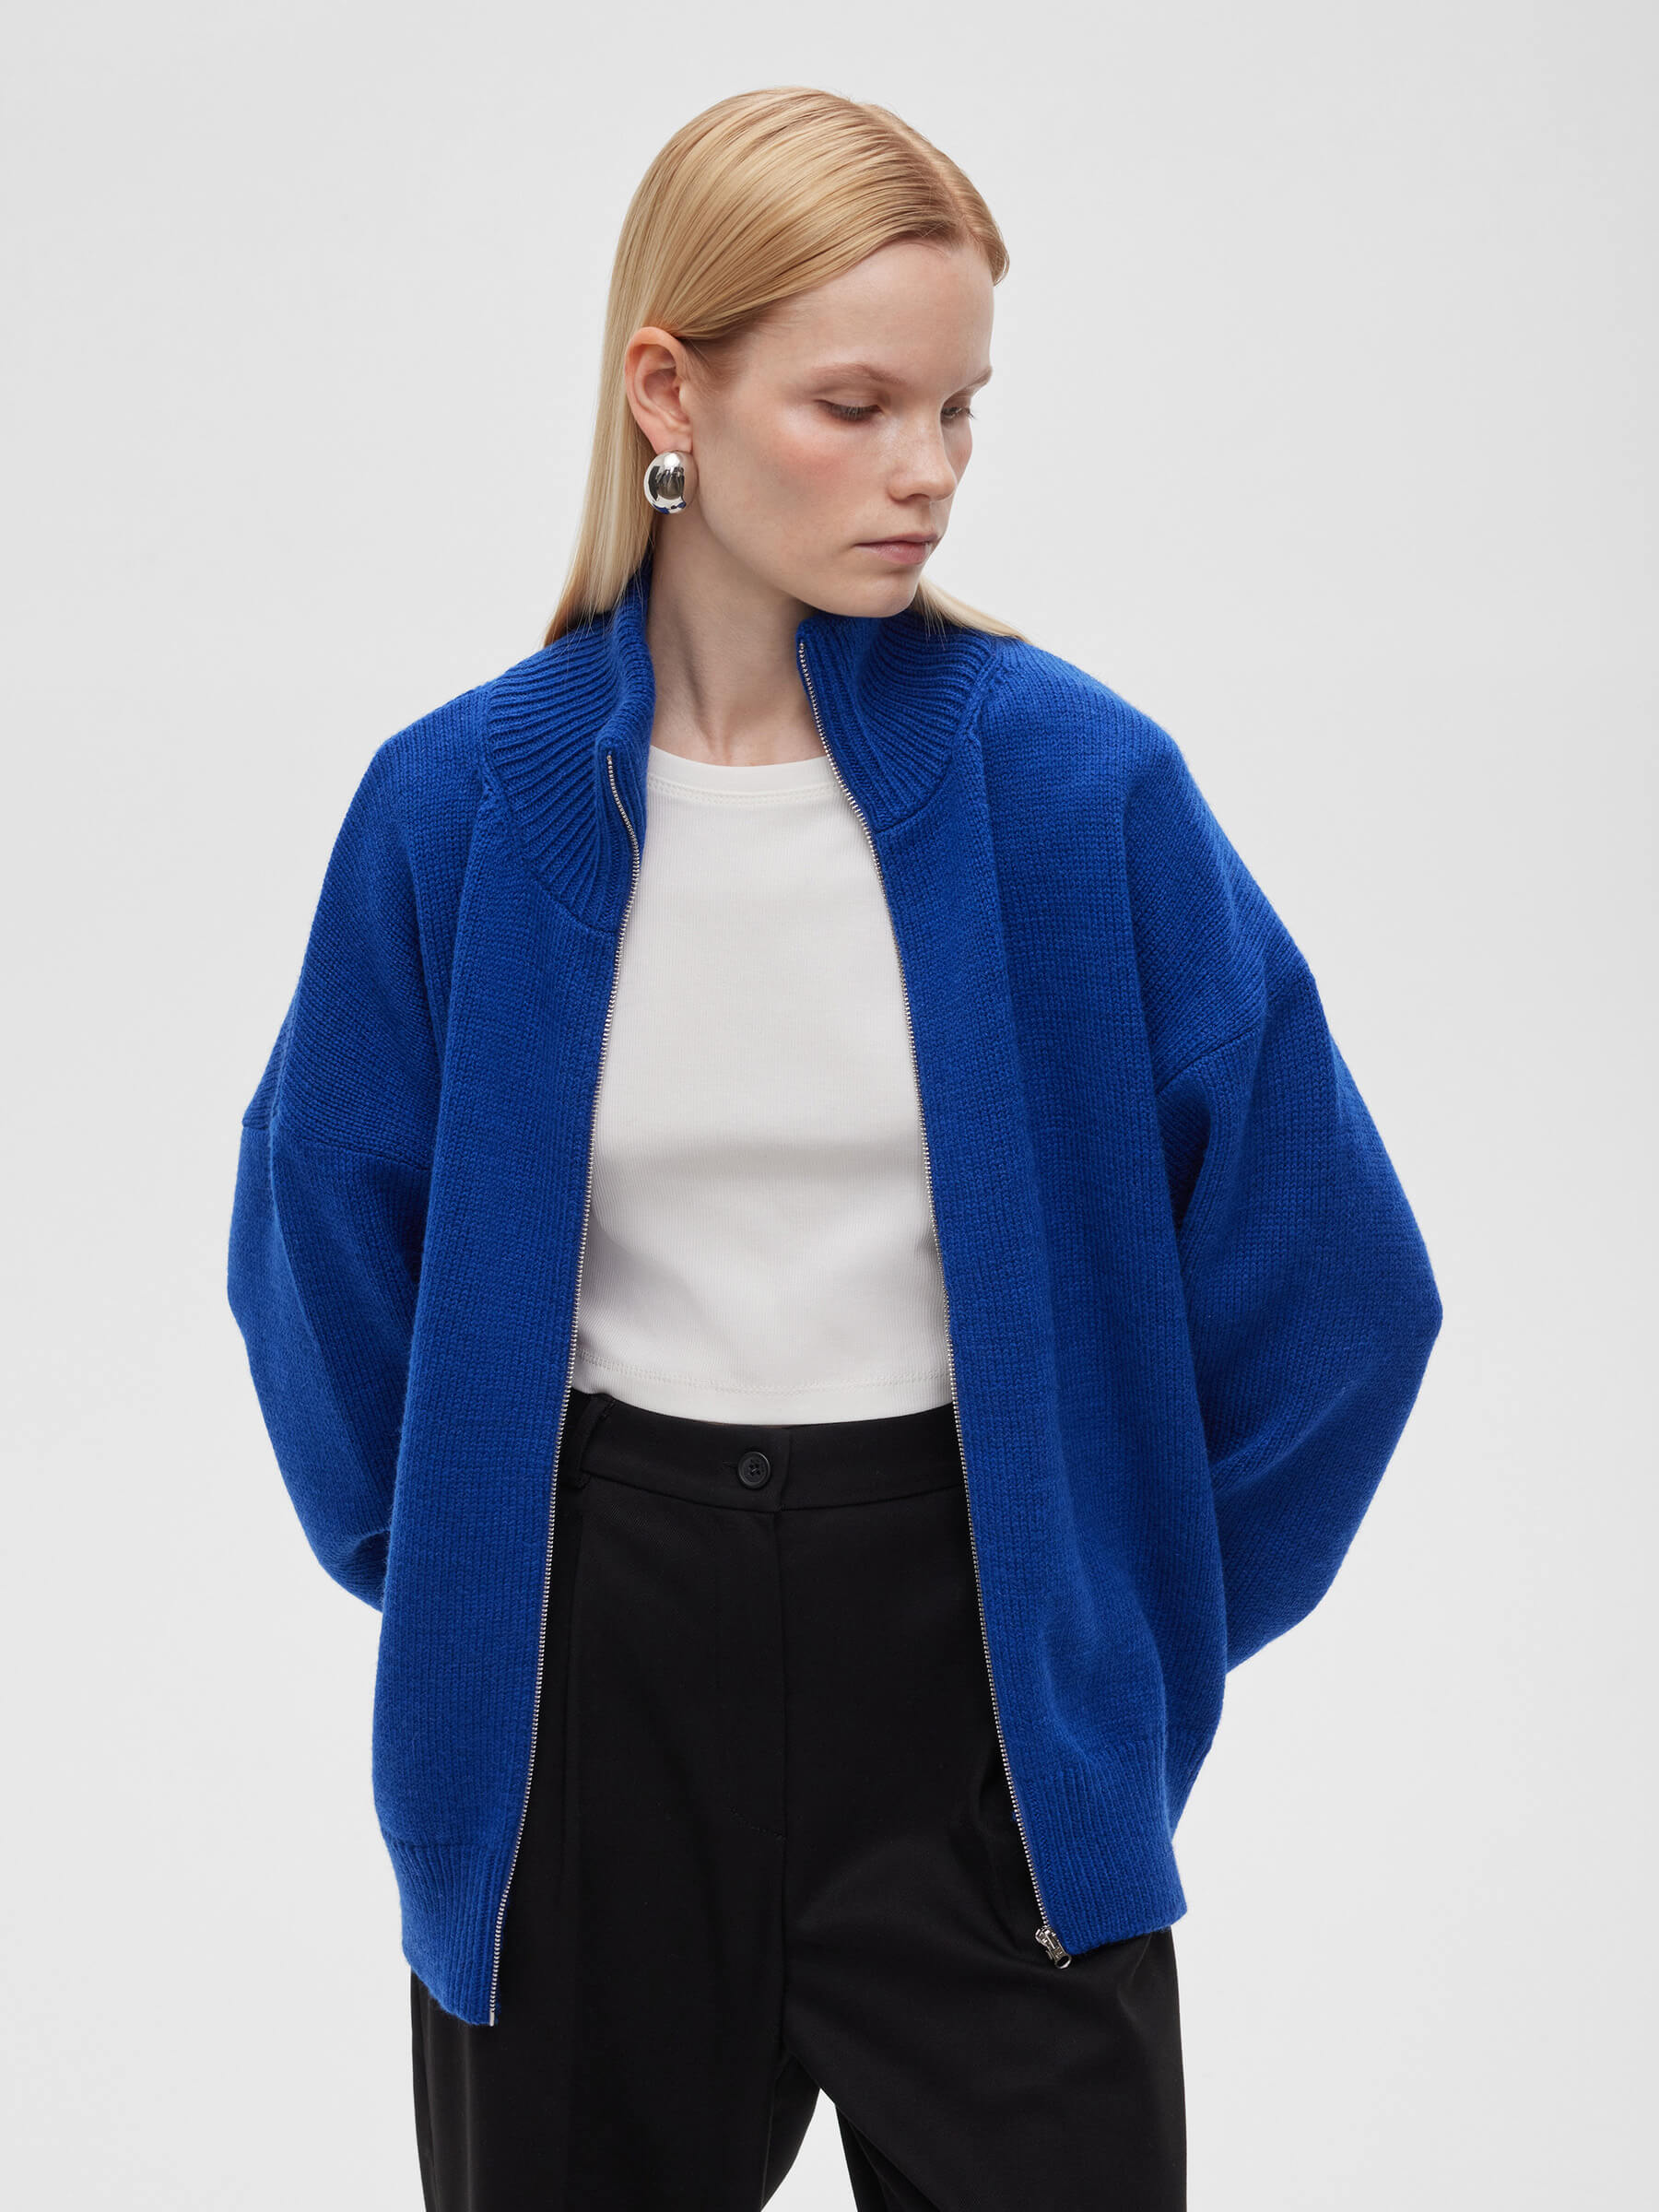 Женский свитер на молнии из шерсти, цвет – синий